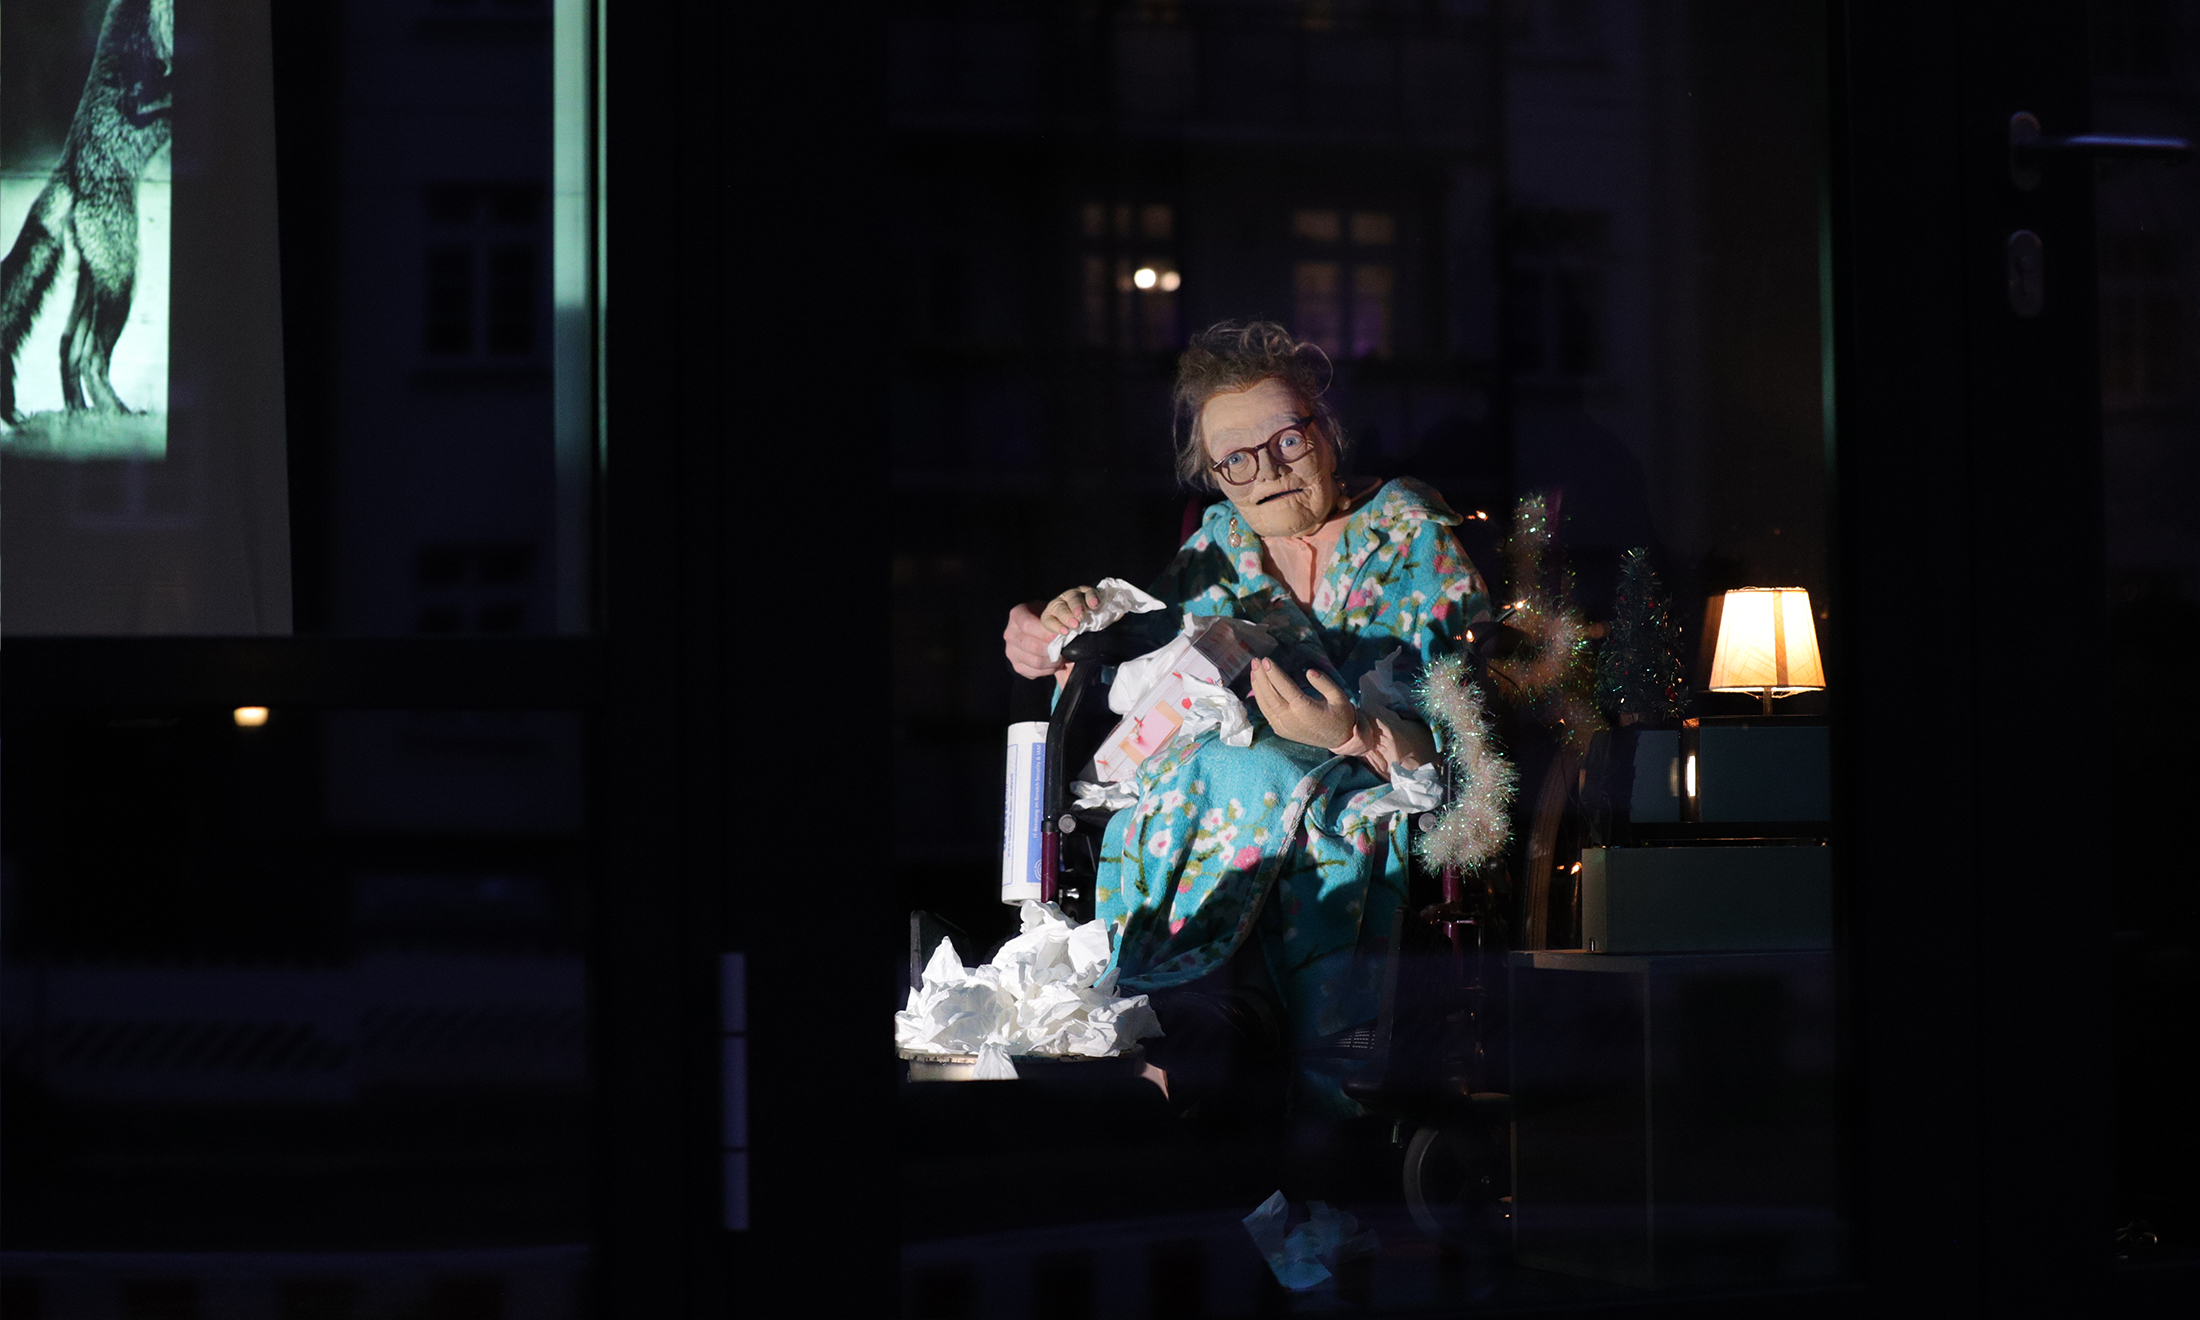 Am 11. Dezember saß eine alte Dame im Fenster, bewegt von Richard Baborka und Leonhard Schubert